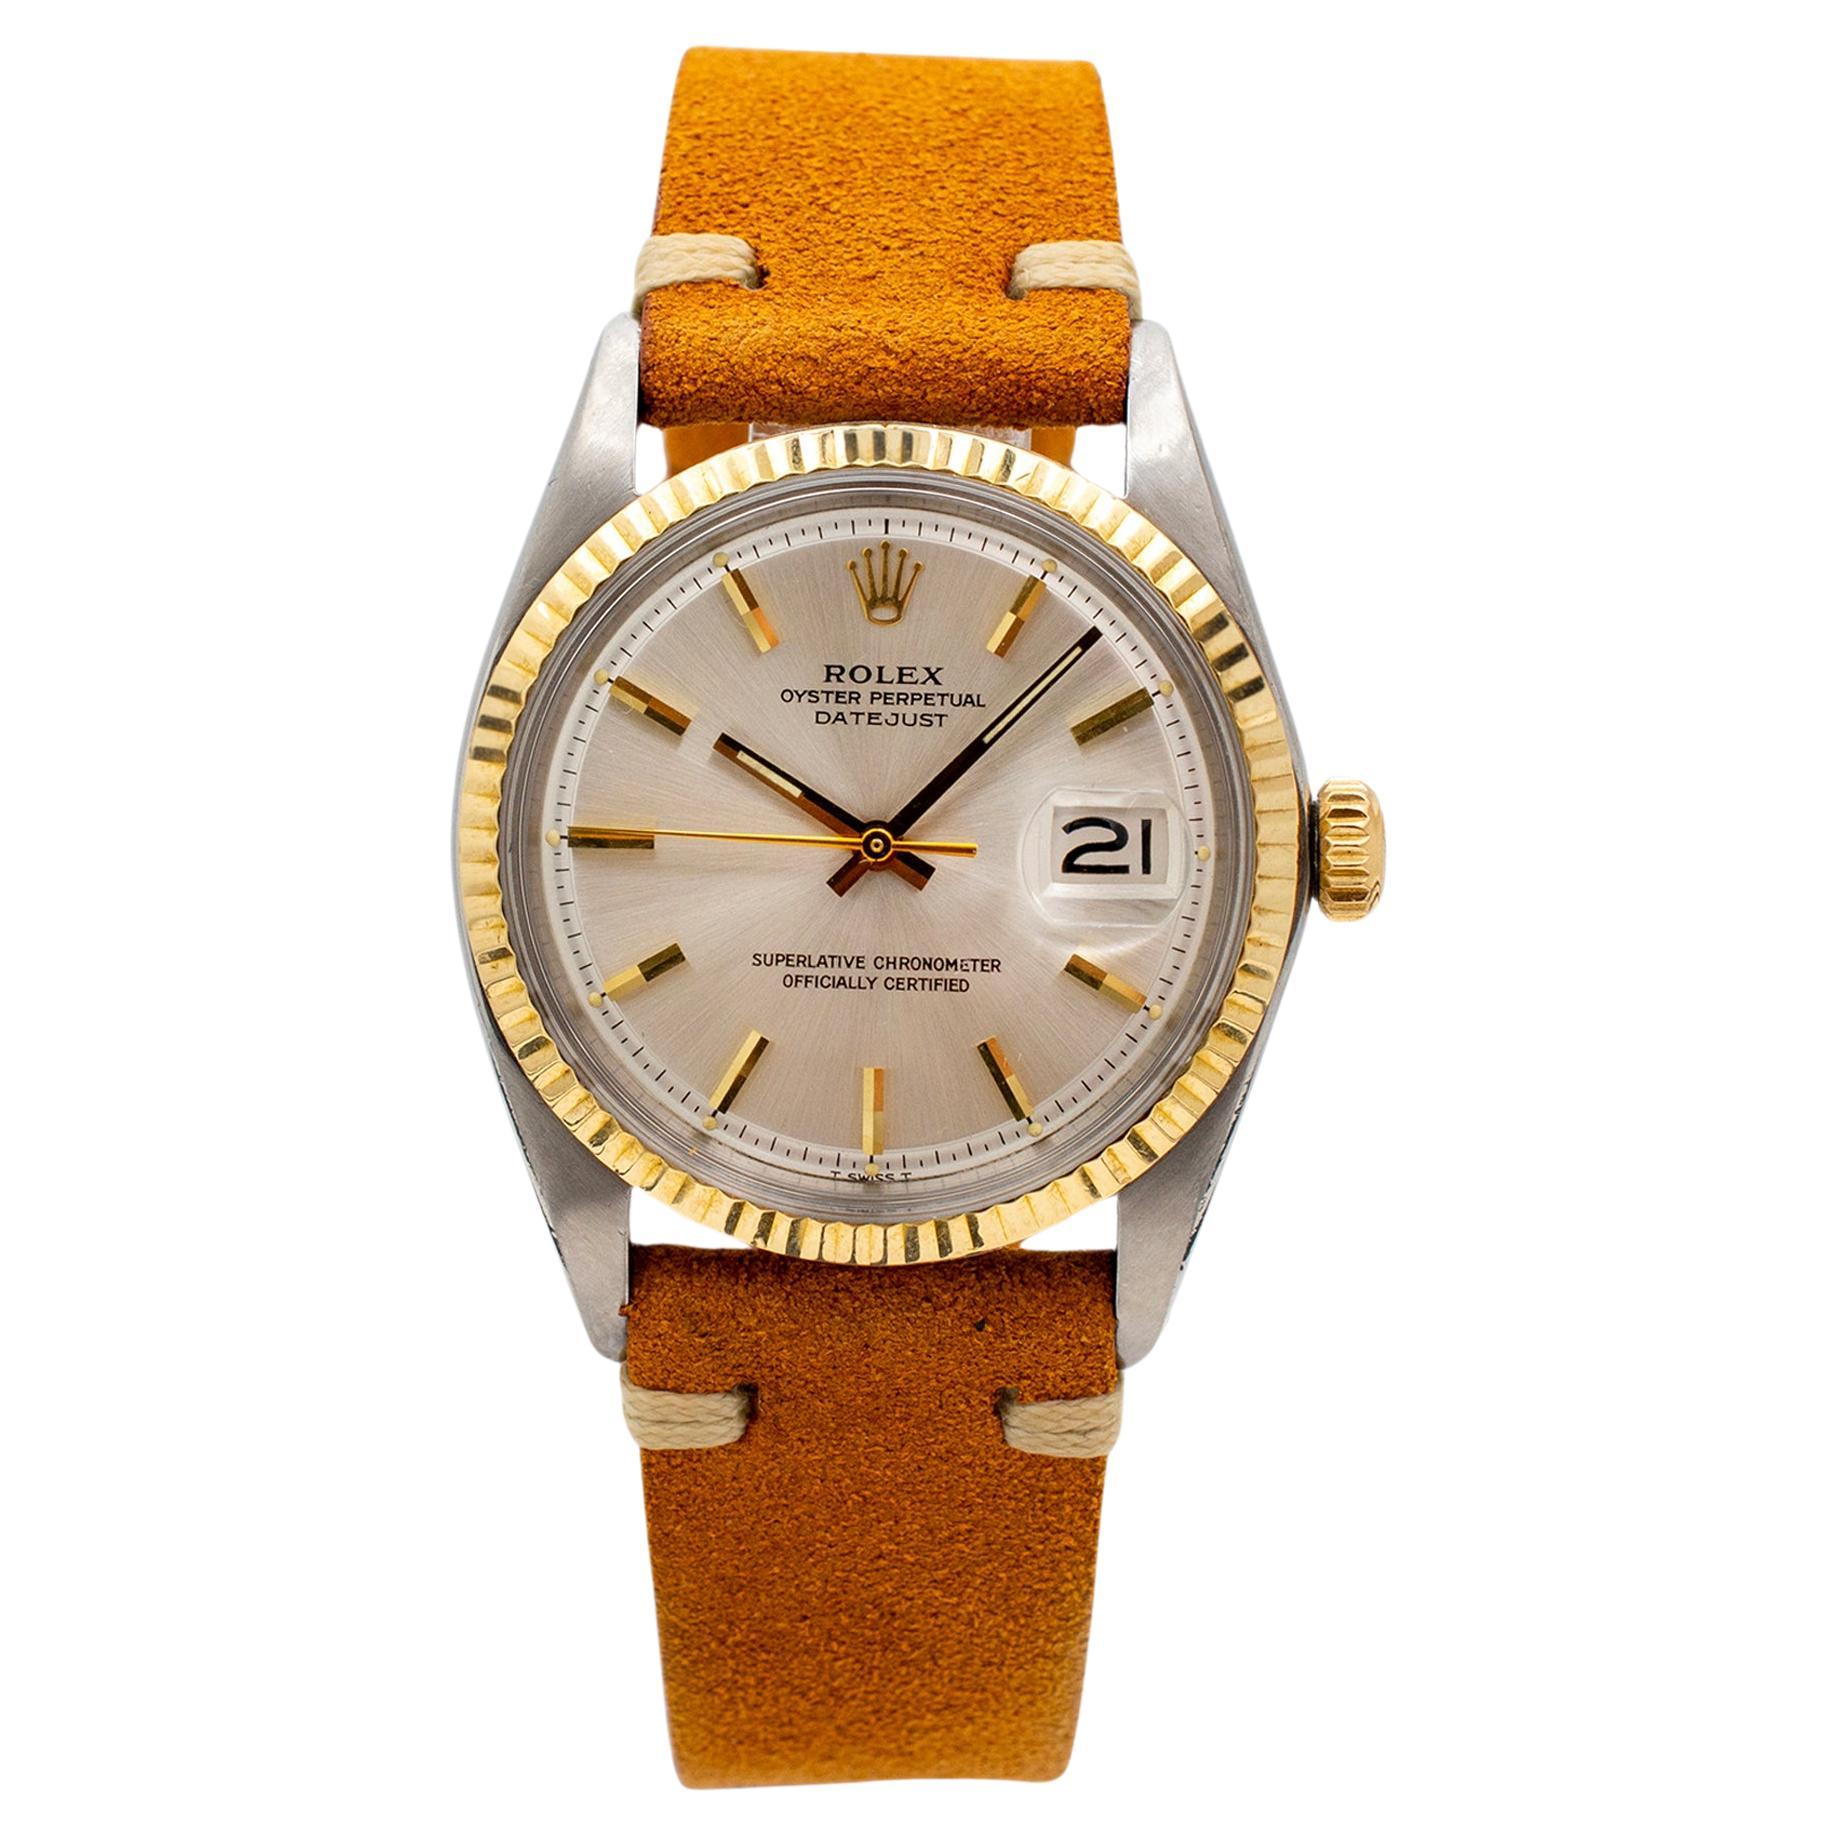 Vintage 1968 Rolex Datejust 36MM 1601 Silber Zifferblatt Stahl-Gelbgold-Uhr, Vintage